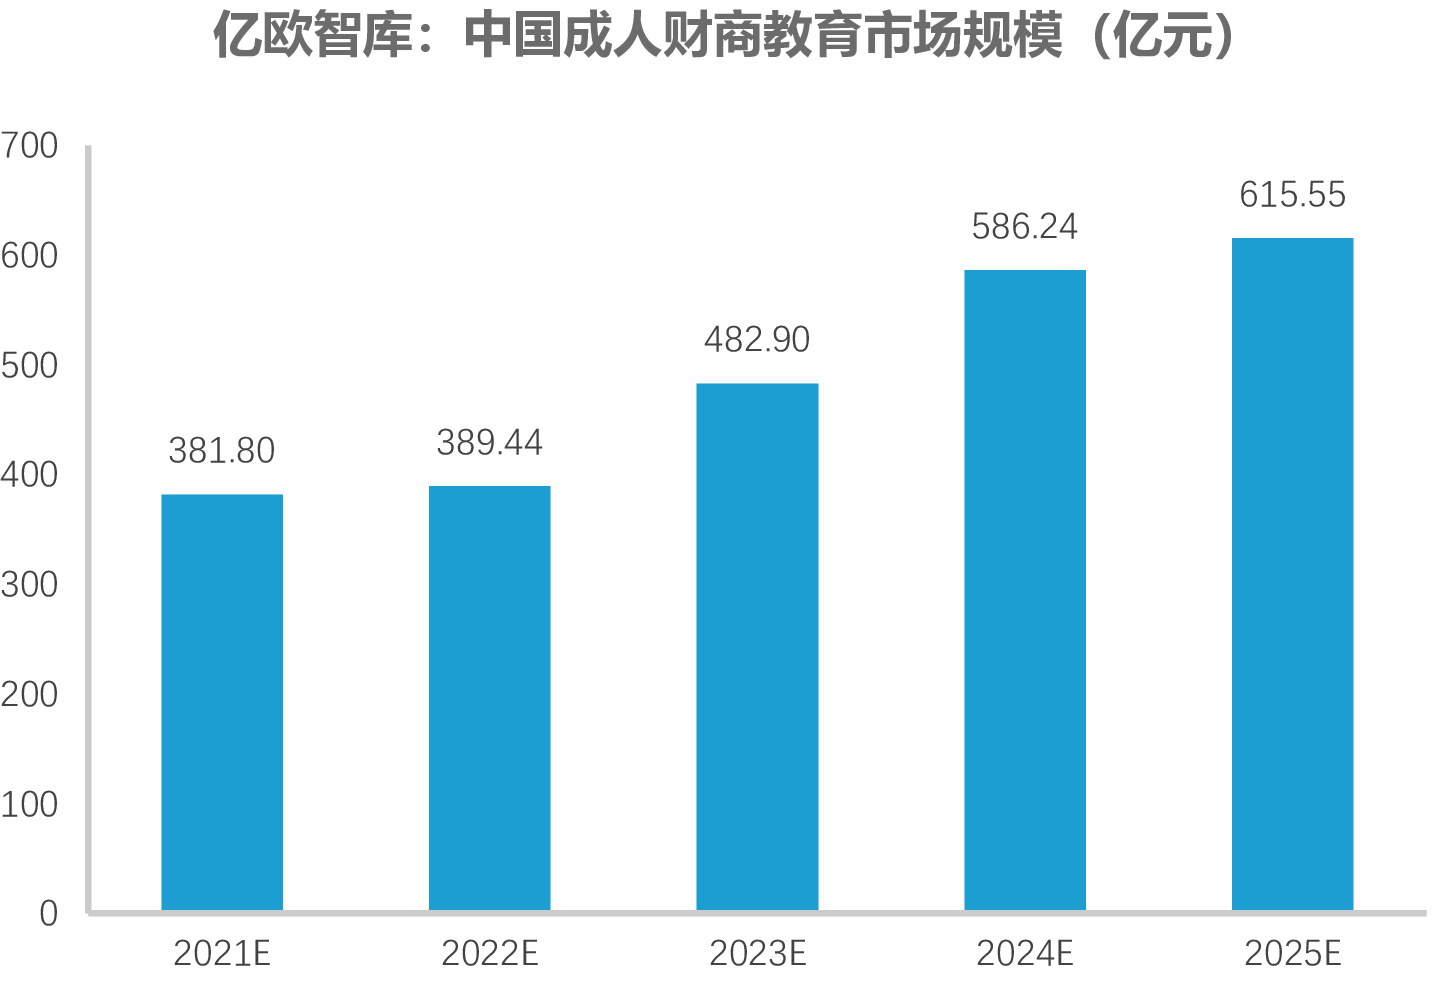 进度 0%报告目录中国财商教育行业发展背景及现状中国财商教育行业施